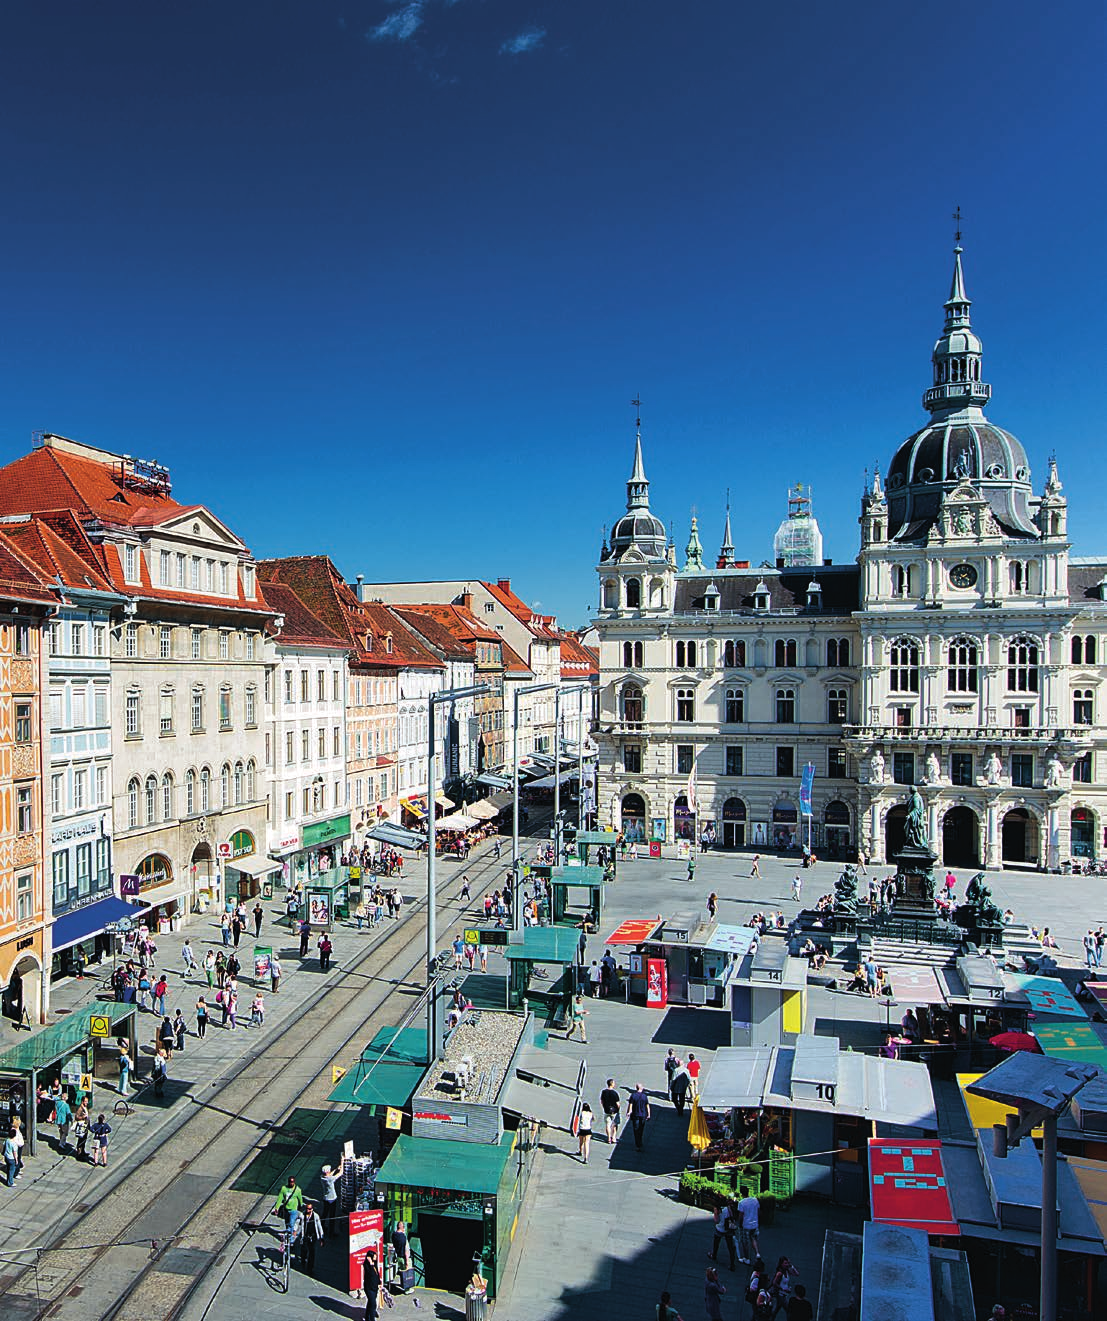 So lässt es sich studieren. Graz ist der ideale Ort zum Studieren, an dem Wissenschaft, Wirtschaft und Kultur aufeinandertreffen. Das kommt nicht von ungefähr über 50.